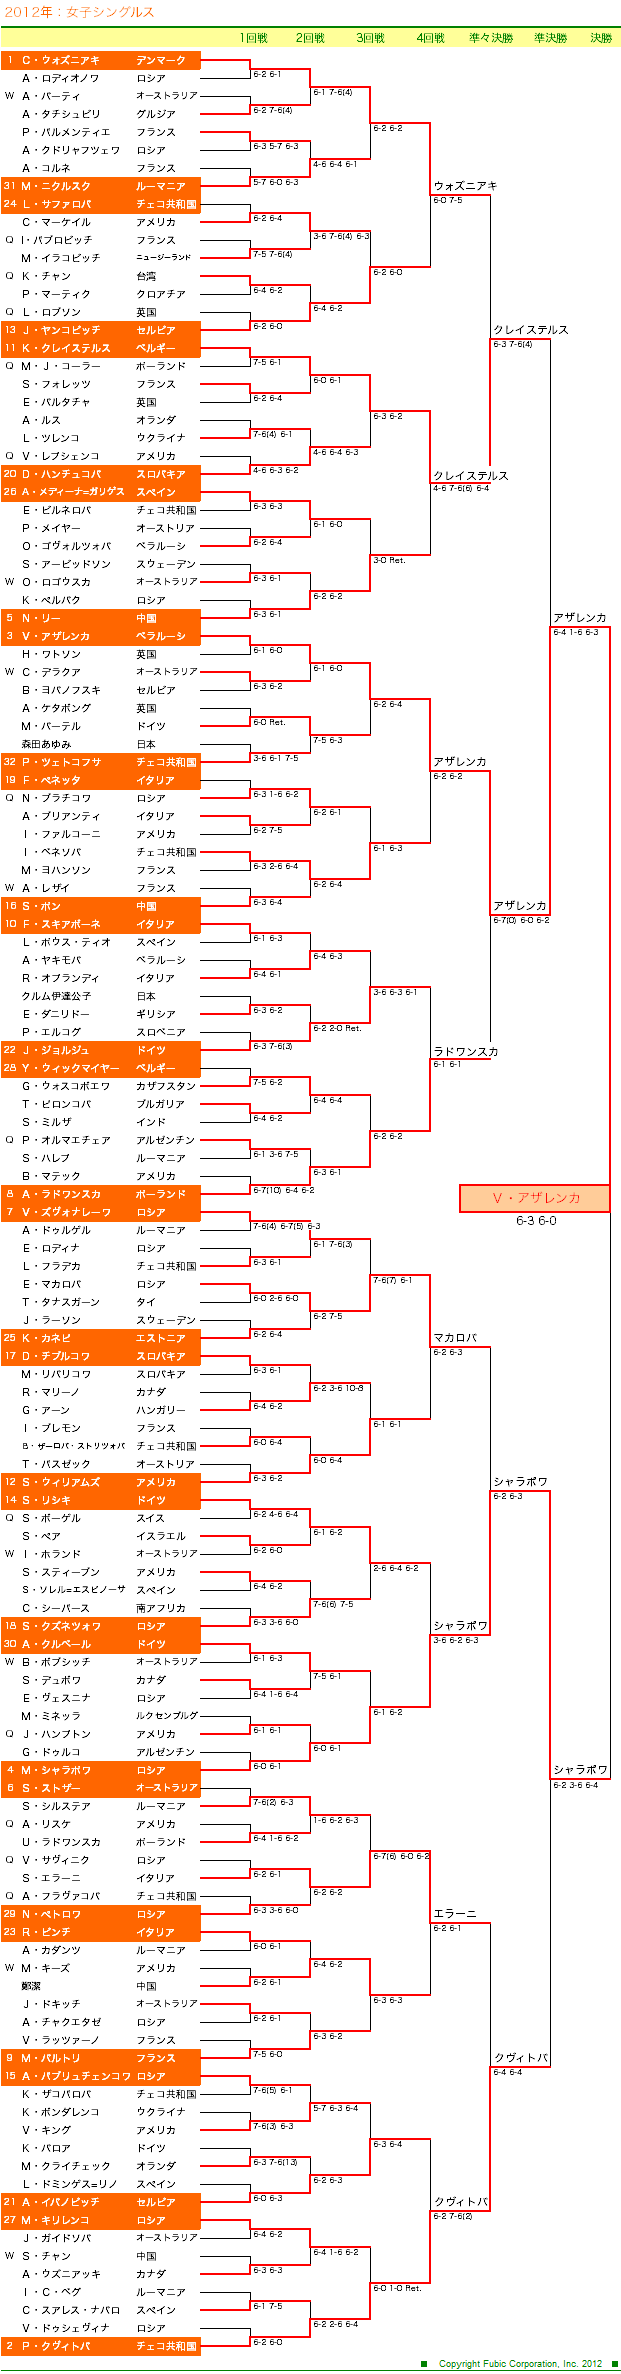 全豪オープンテニス2012　女子シングルスドロー表